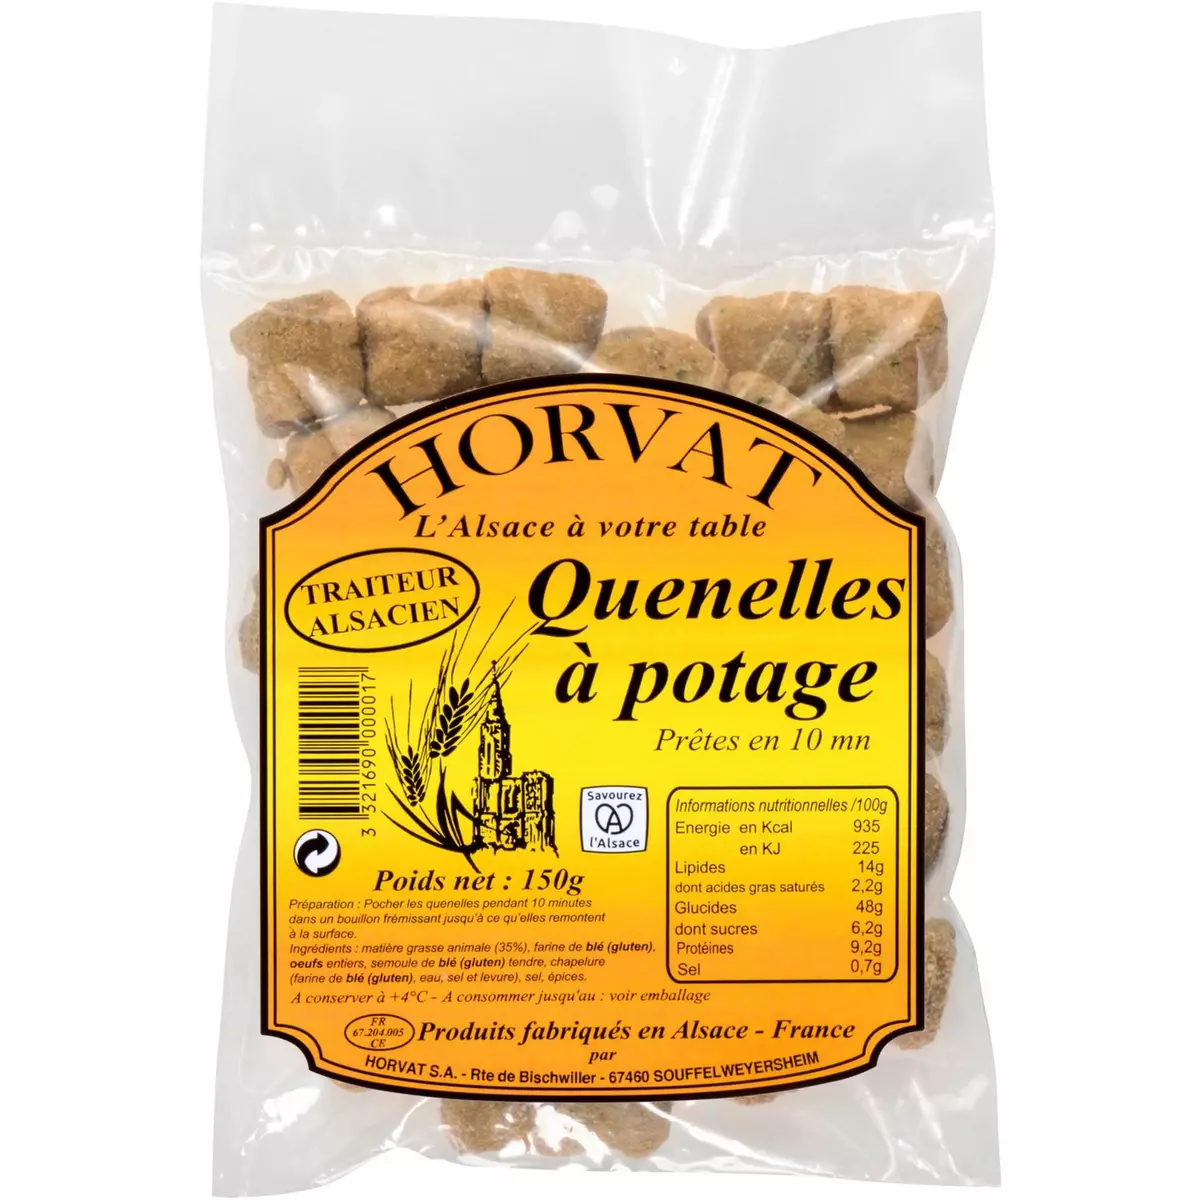 HORVAT Quenelles à potage 2-3 portions 150g